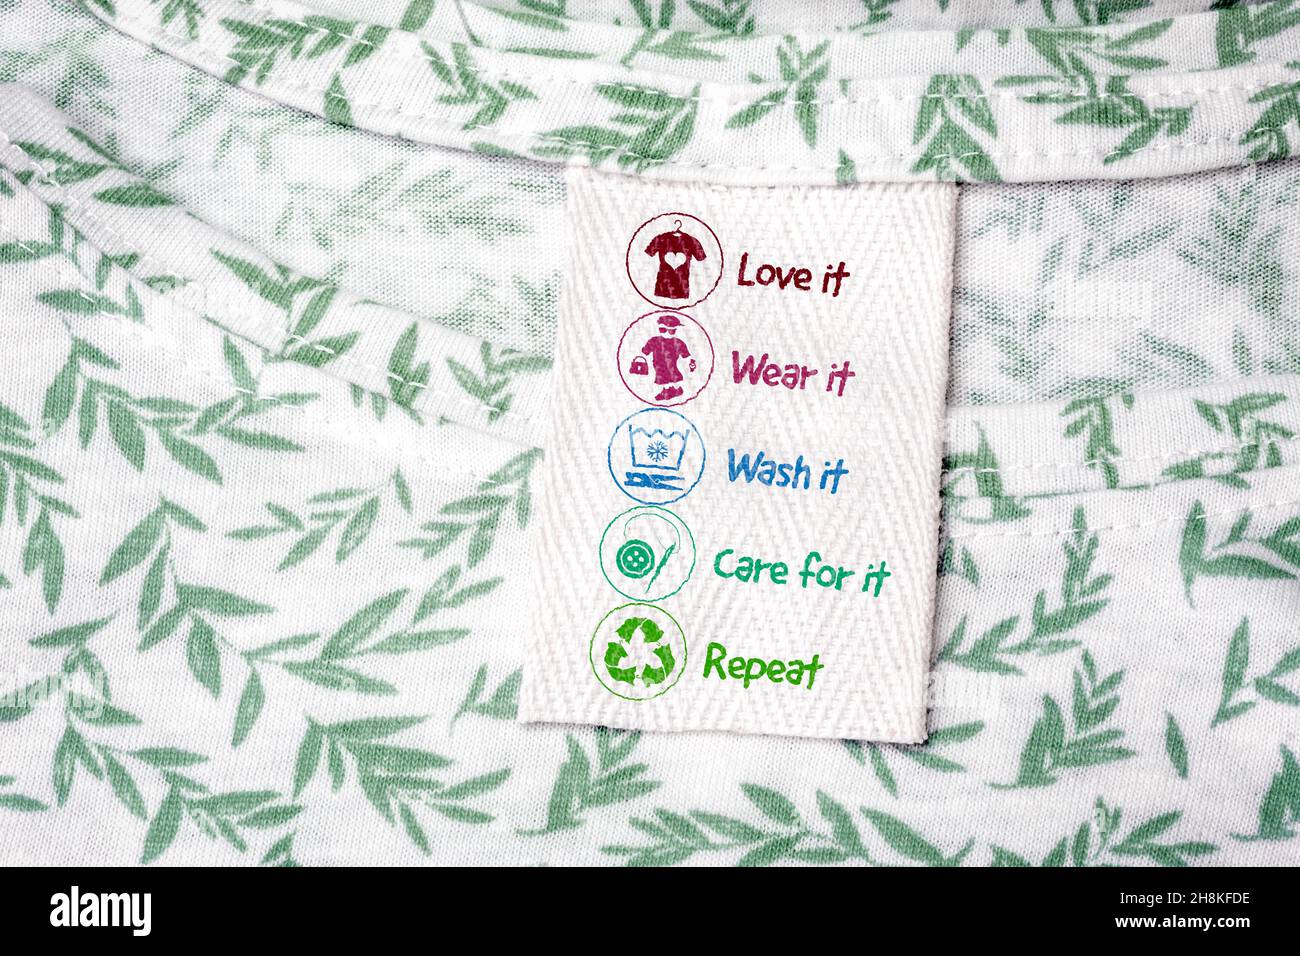 Nachhaltige Mode Shirt Label mit tragen es, arbeiten es, lieben es, waschen es, Pflege für es, Wiederhole die Symbole, um Kleidung nachhaltig zu gestalten Stockfoto